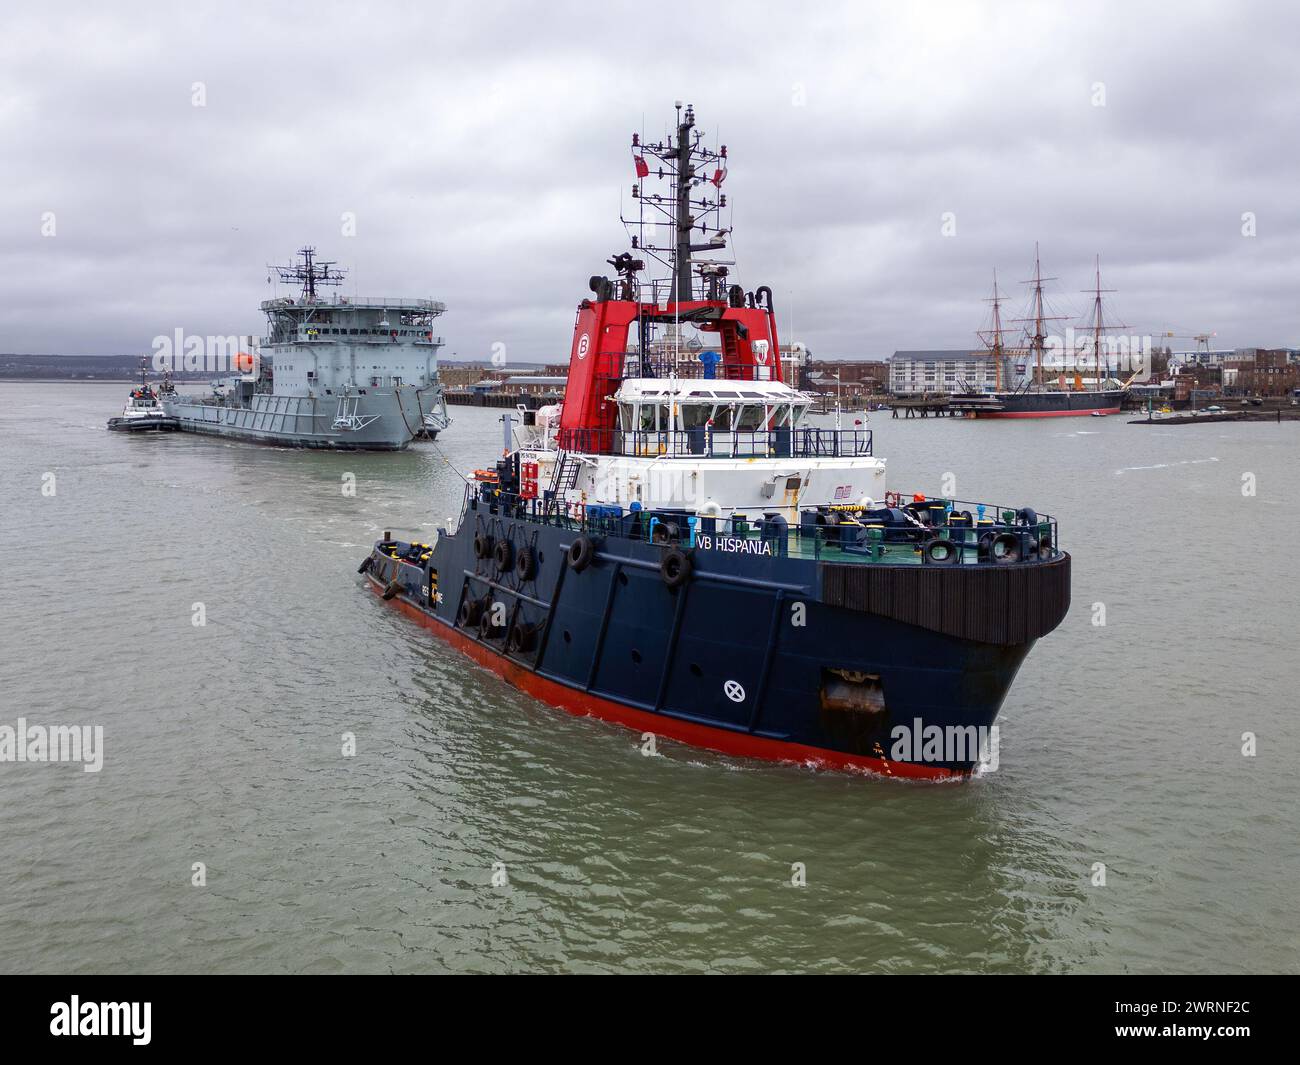 Le remorqueur de remorquage Boluda VB Hispania remorquant l'ancien RFA diligence hors du port de Portsmouth pour l'éliminer dans un chantier turc. Banque D'Images